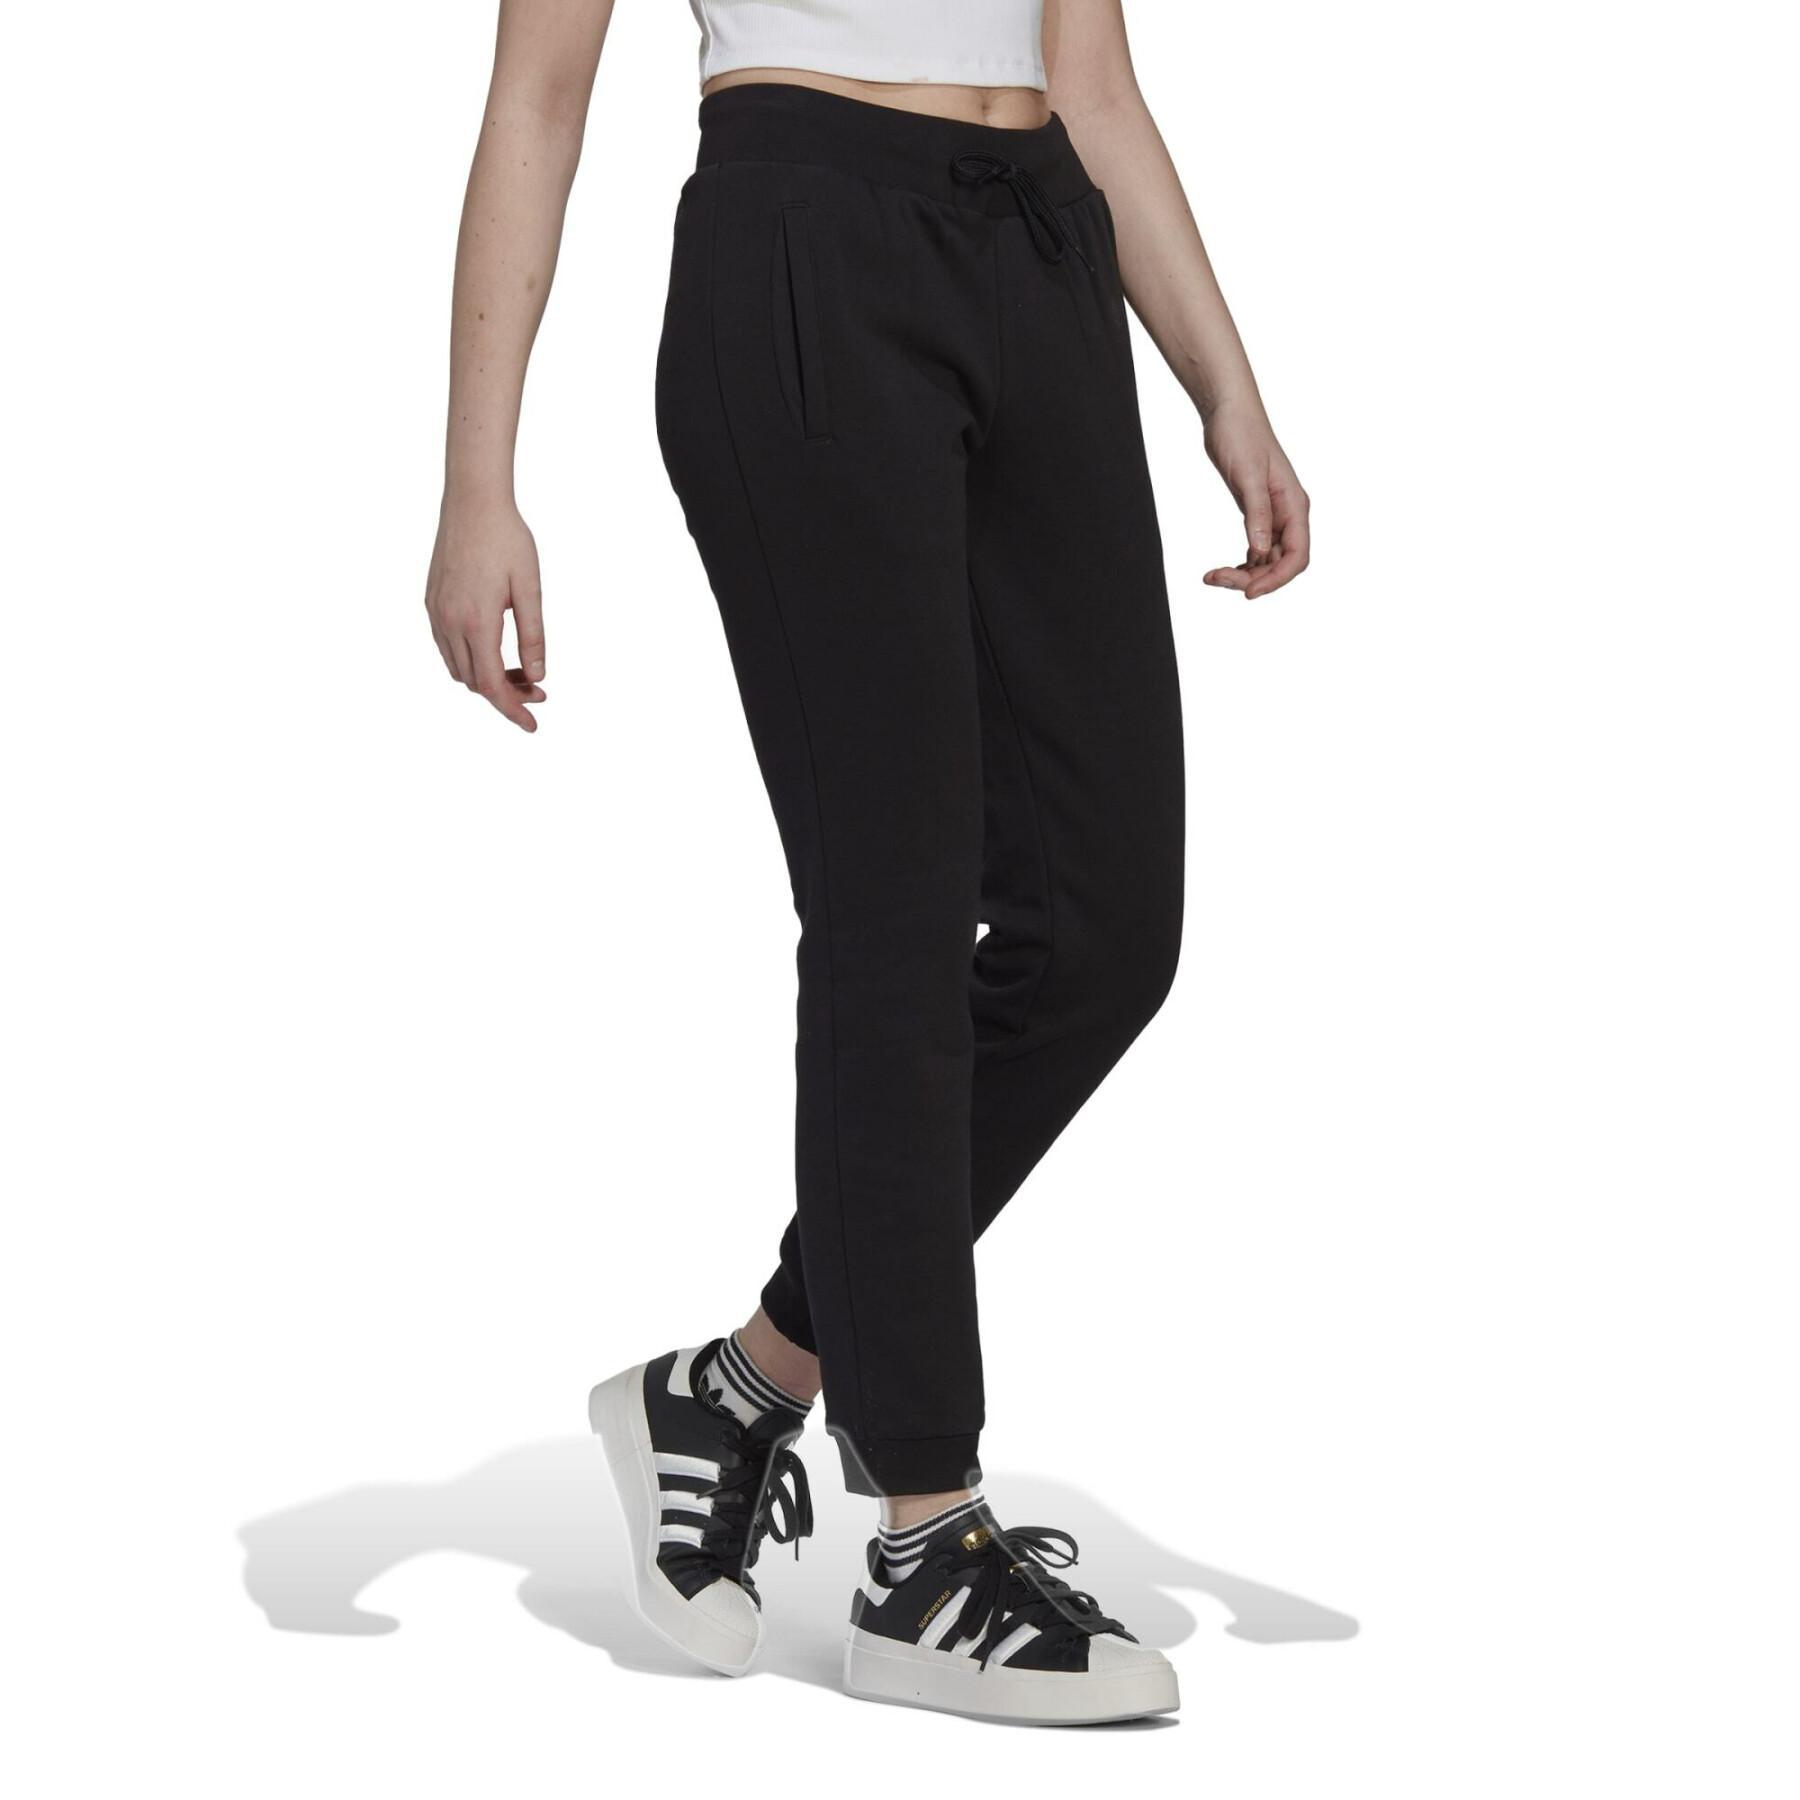 Women's slim-fit fleece jogging suit adidas Originals Adicolor Essentials